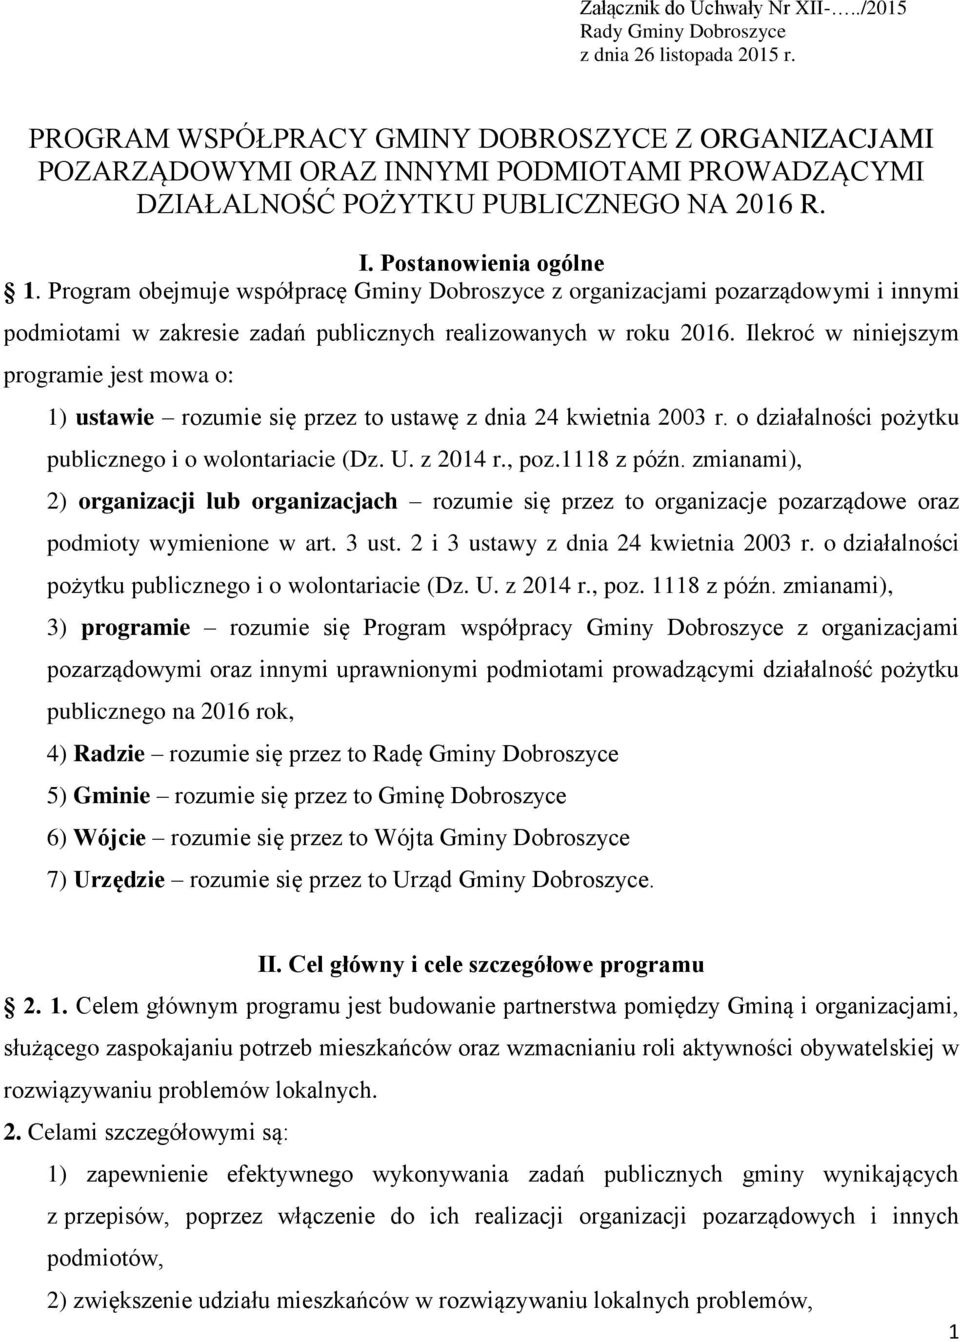 Program obejmuje współpracę Gminy Dobroszyce z organizacjami pozarządowymi i innymi podmiotami w zakresie zadań publicznych realizowanych w roku 2016.